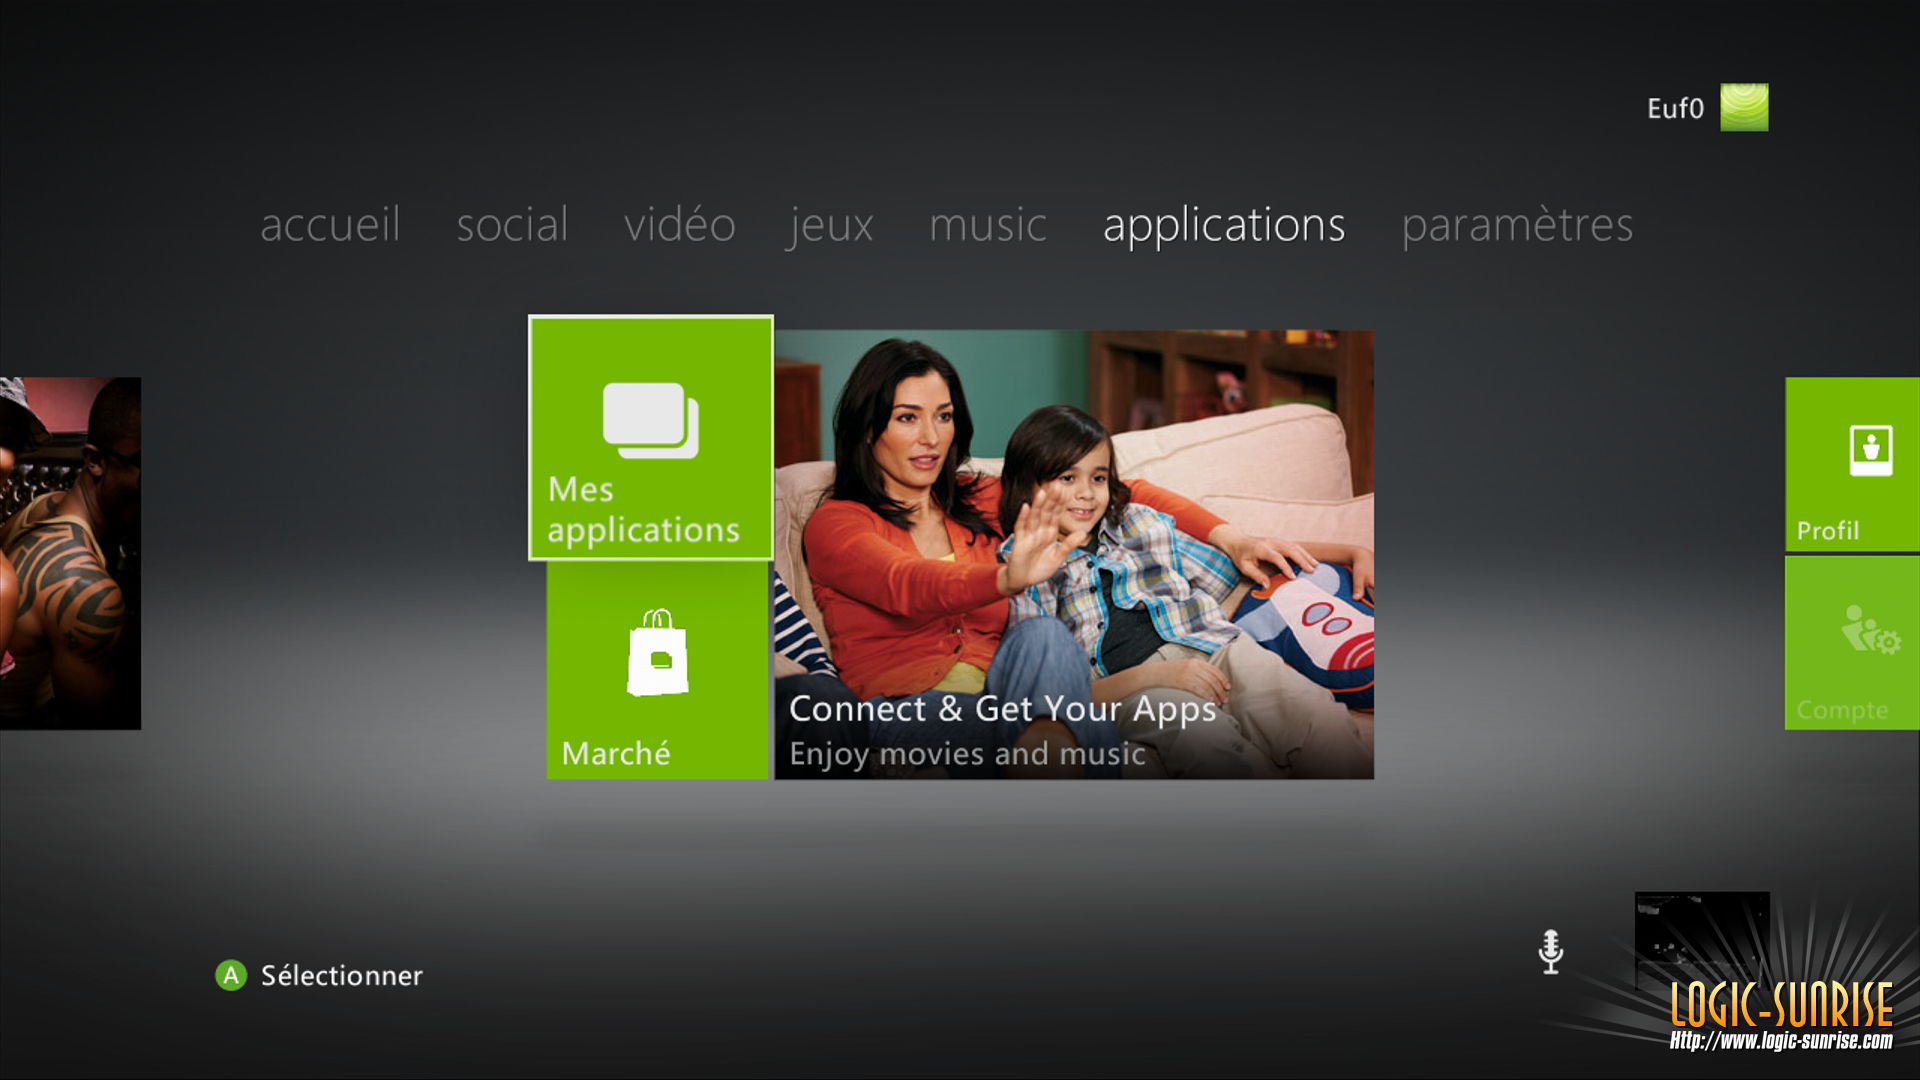 Xbox 360 dashboard